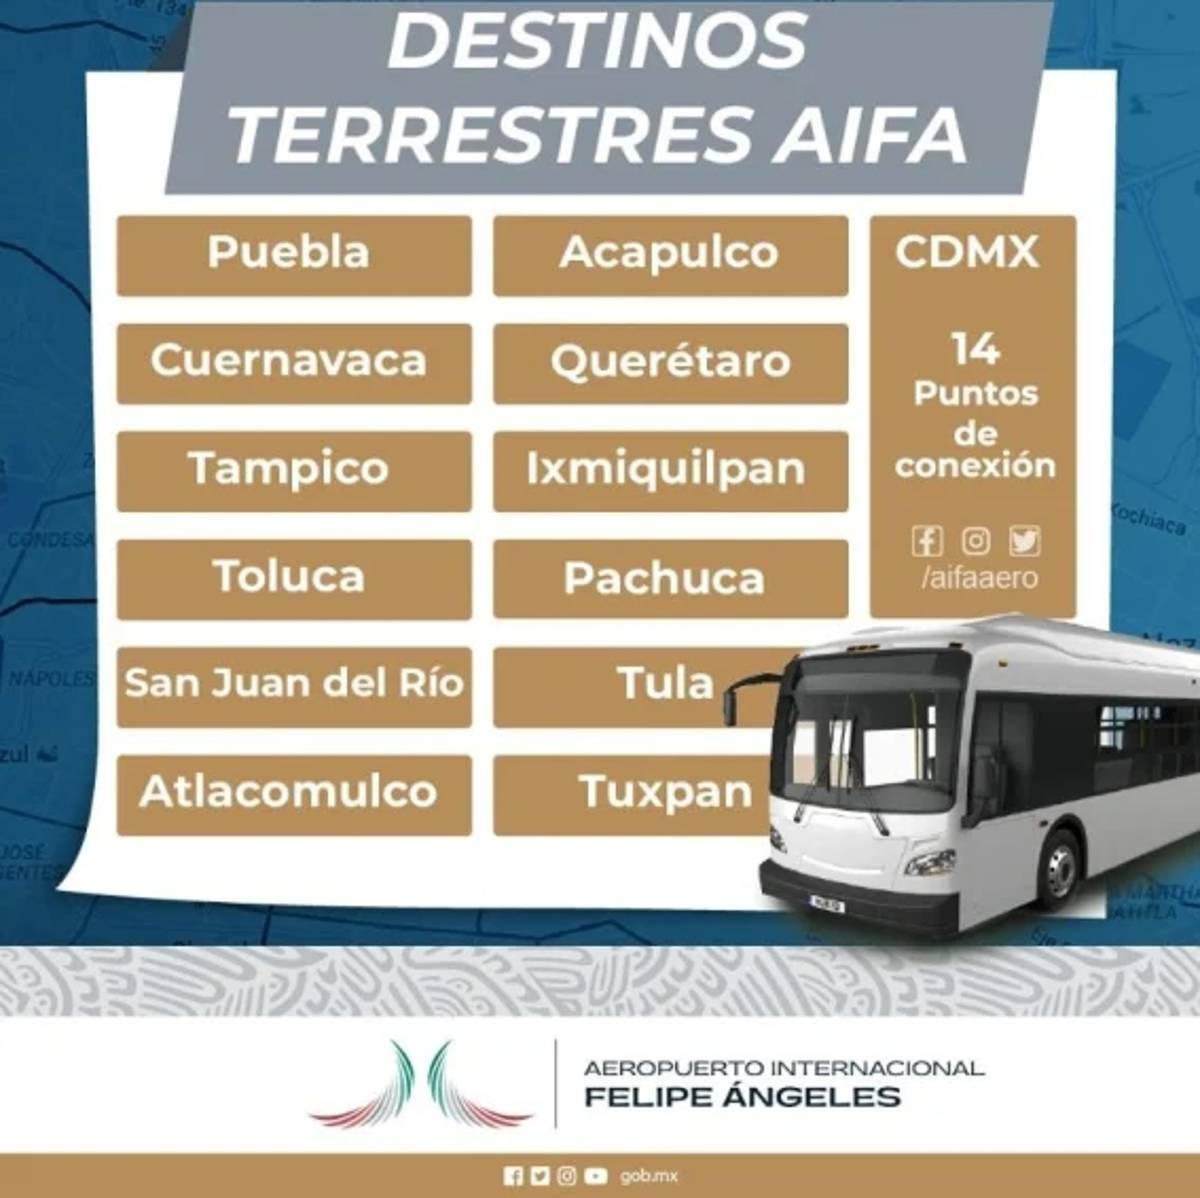 El Aeropuerto Internacional Felipe Ángeles (AIFA) abrió nuevas rutas terrestres.